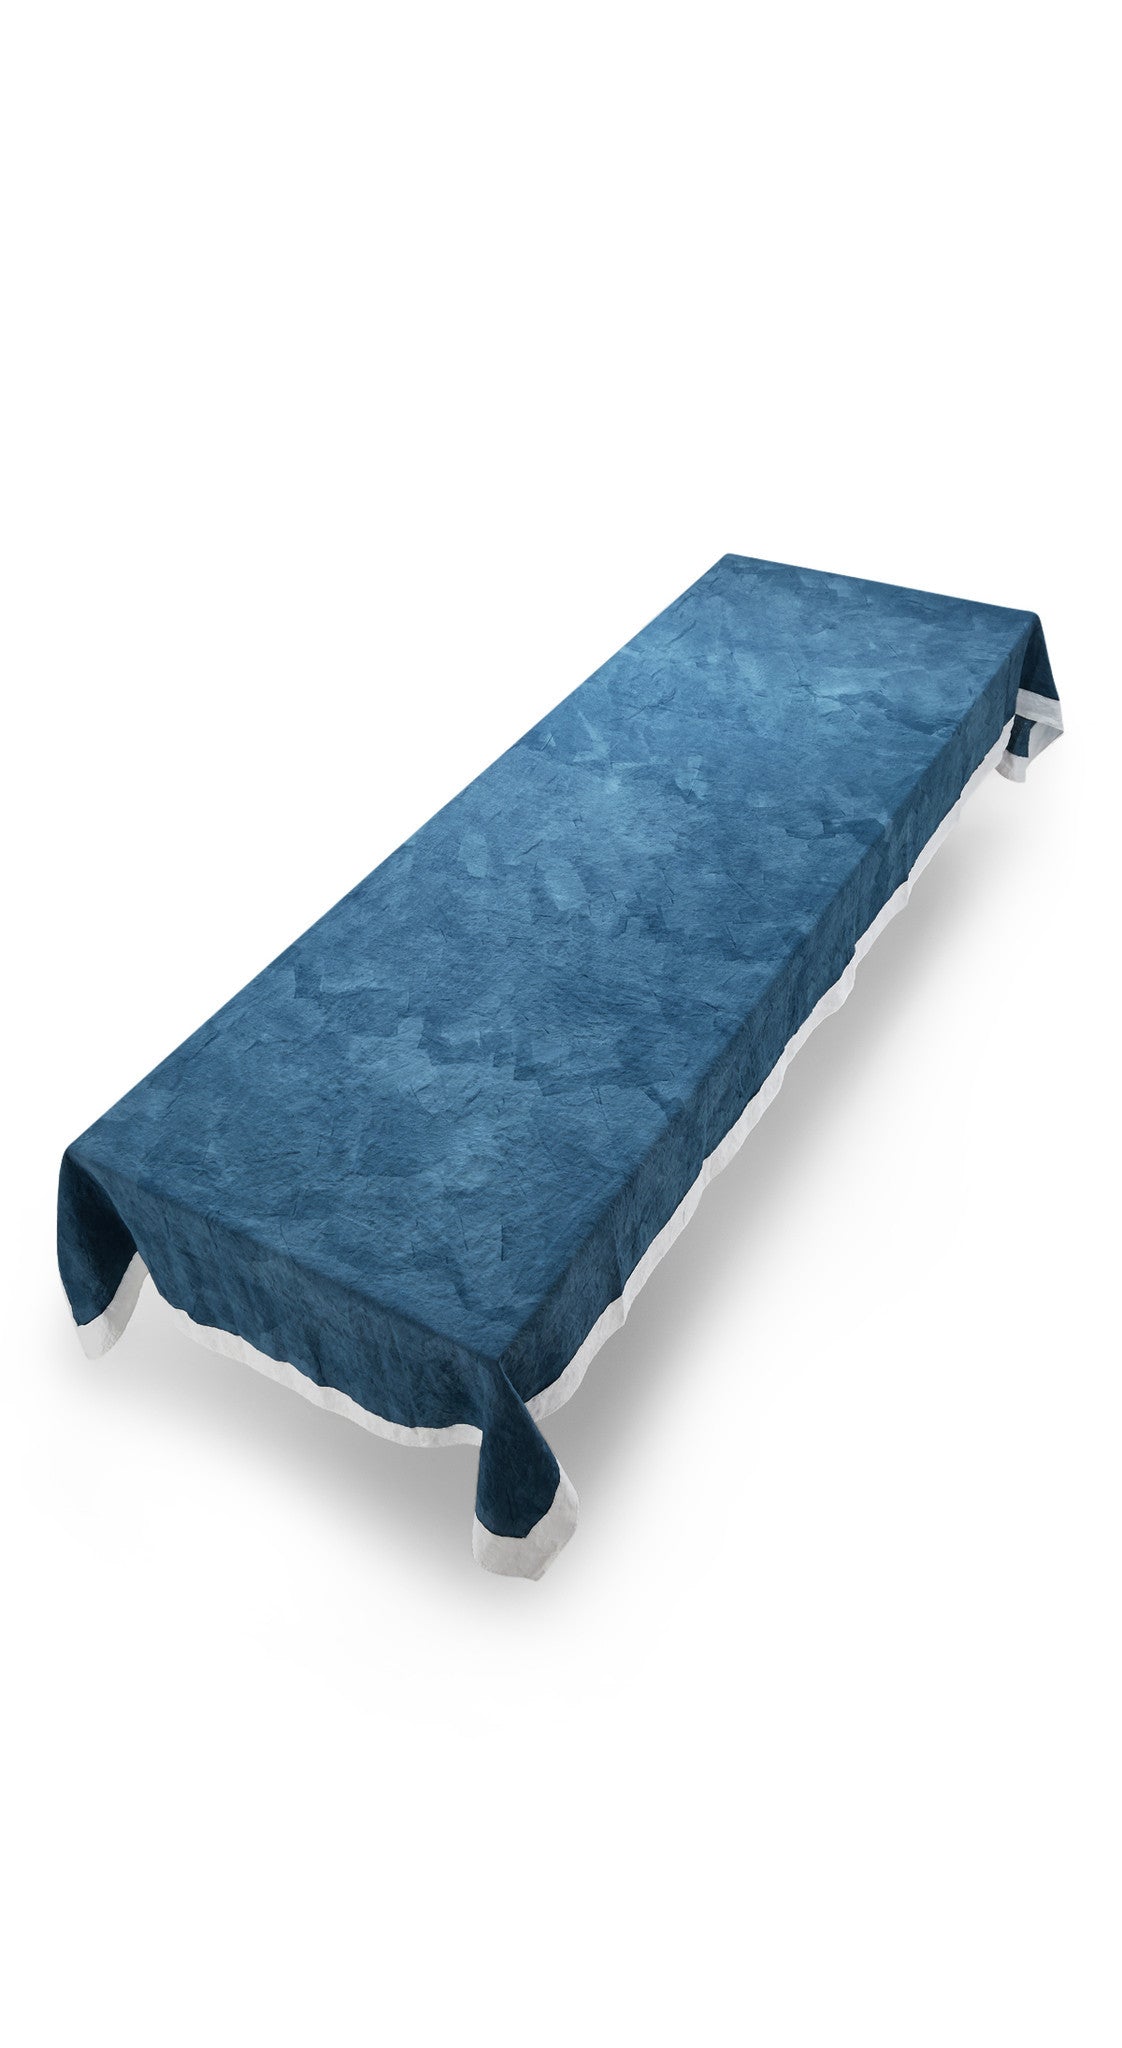 Full Field Linen Tablecloth in Midnight Blue